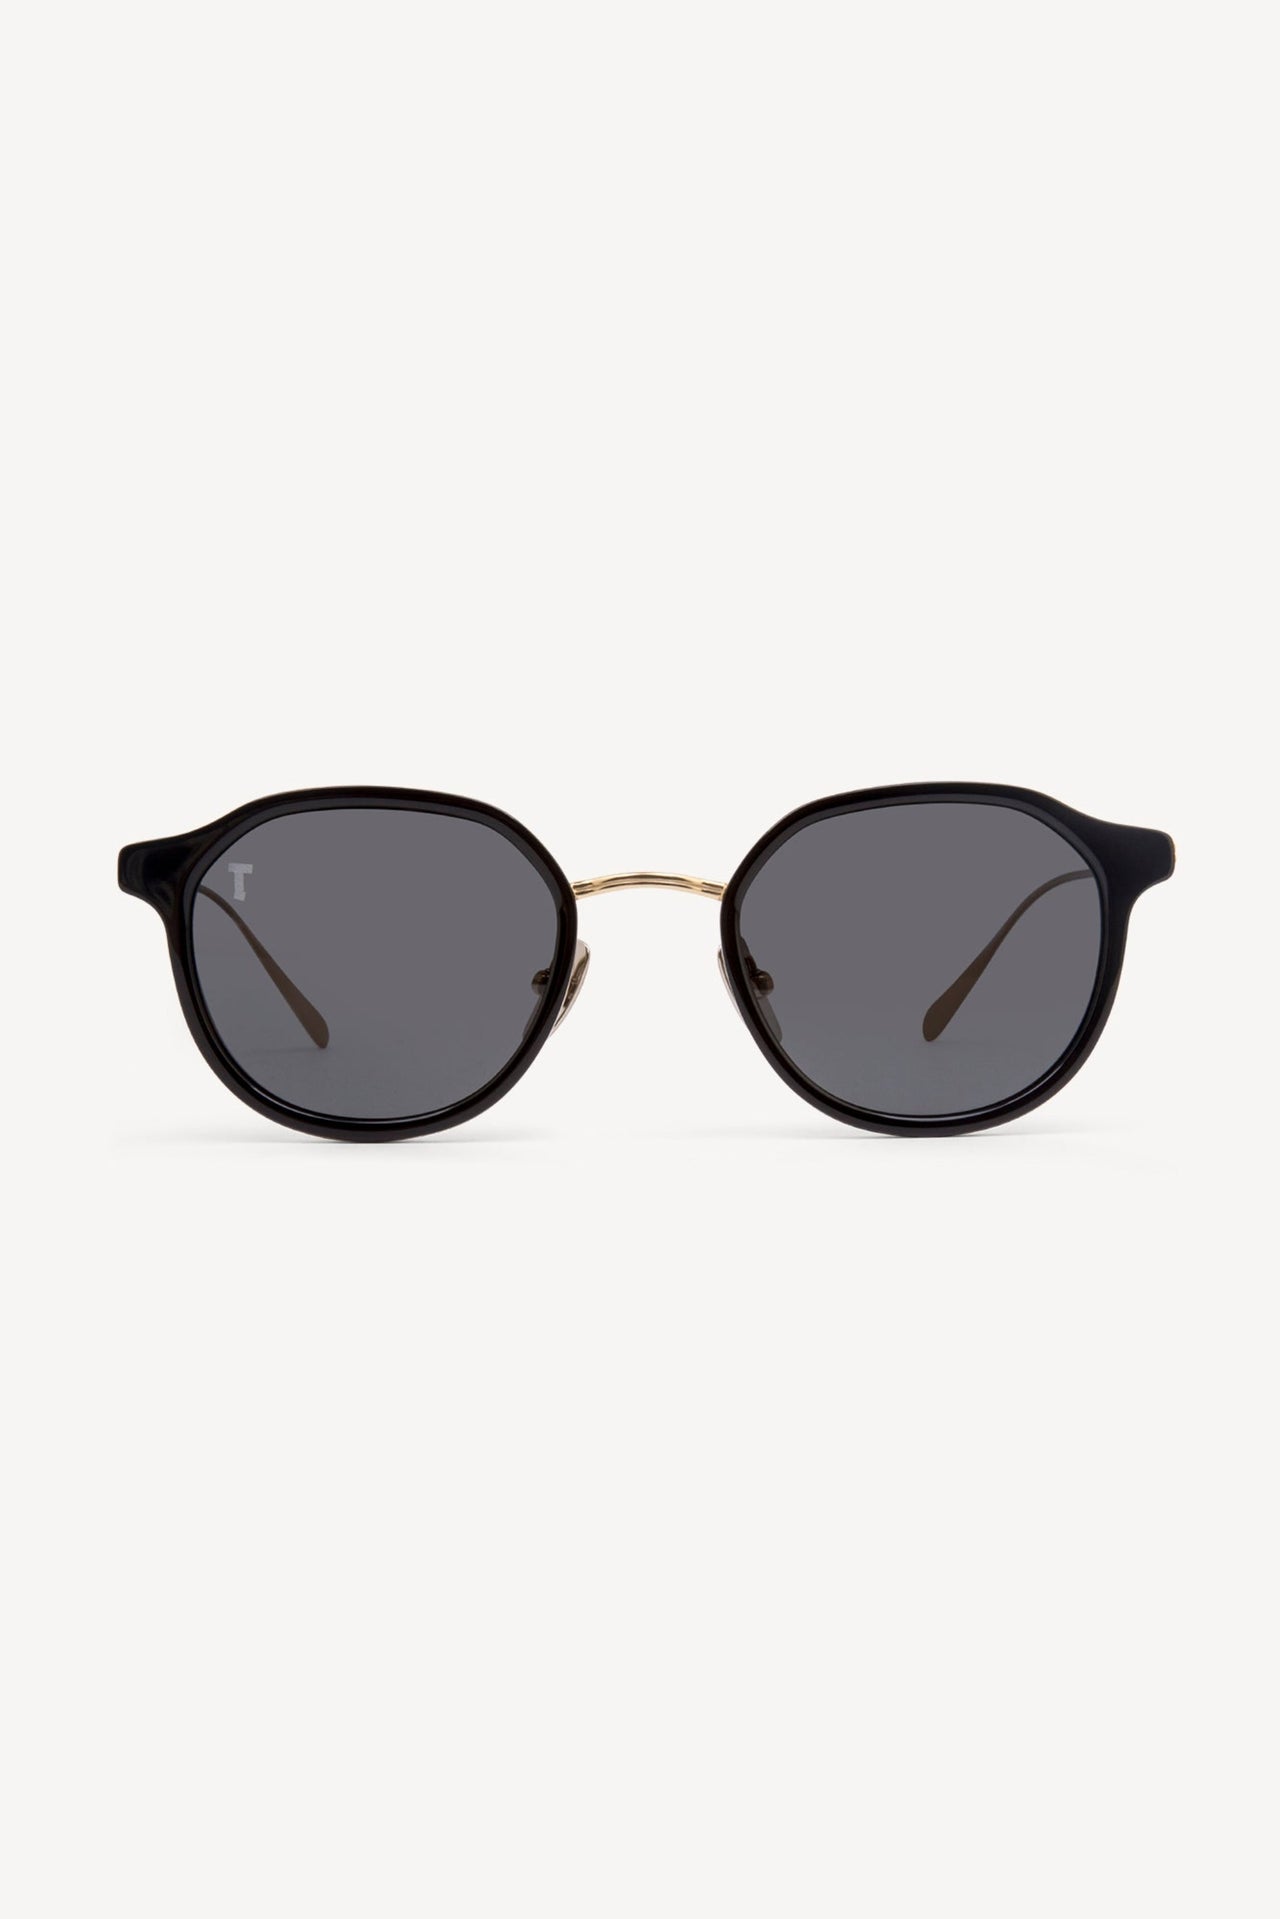 TOATIE Bendigo Round Sunglasses BLACK/BLACK